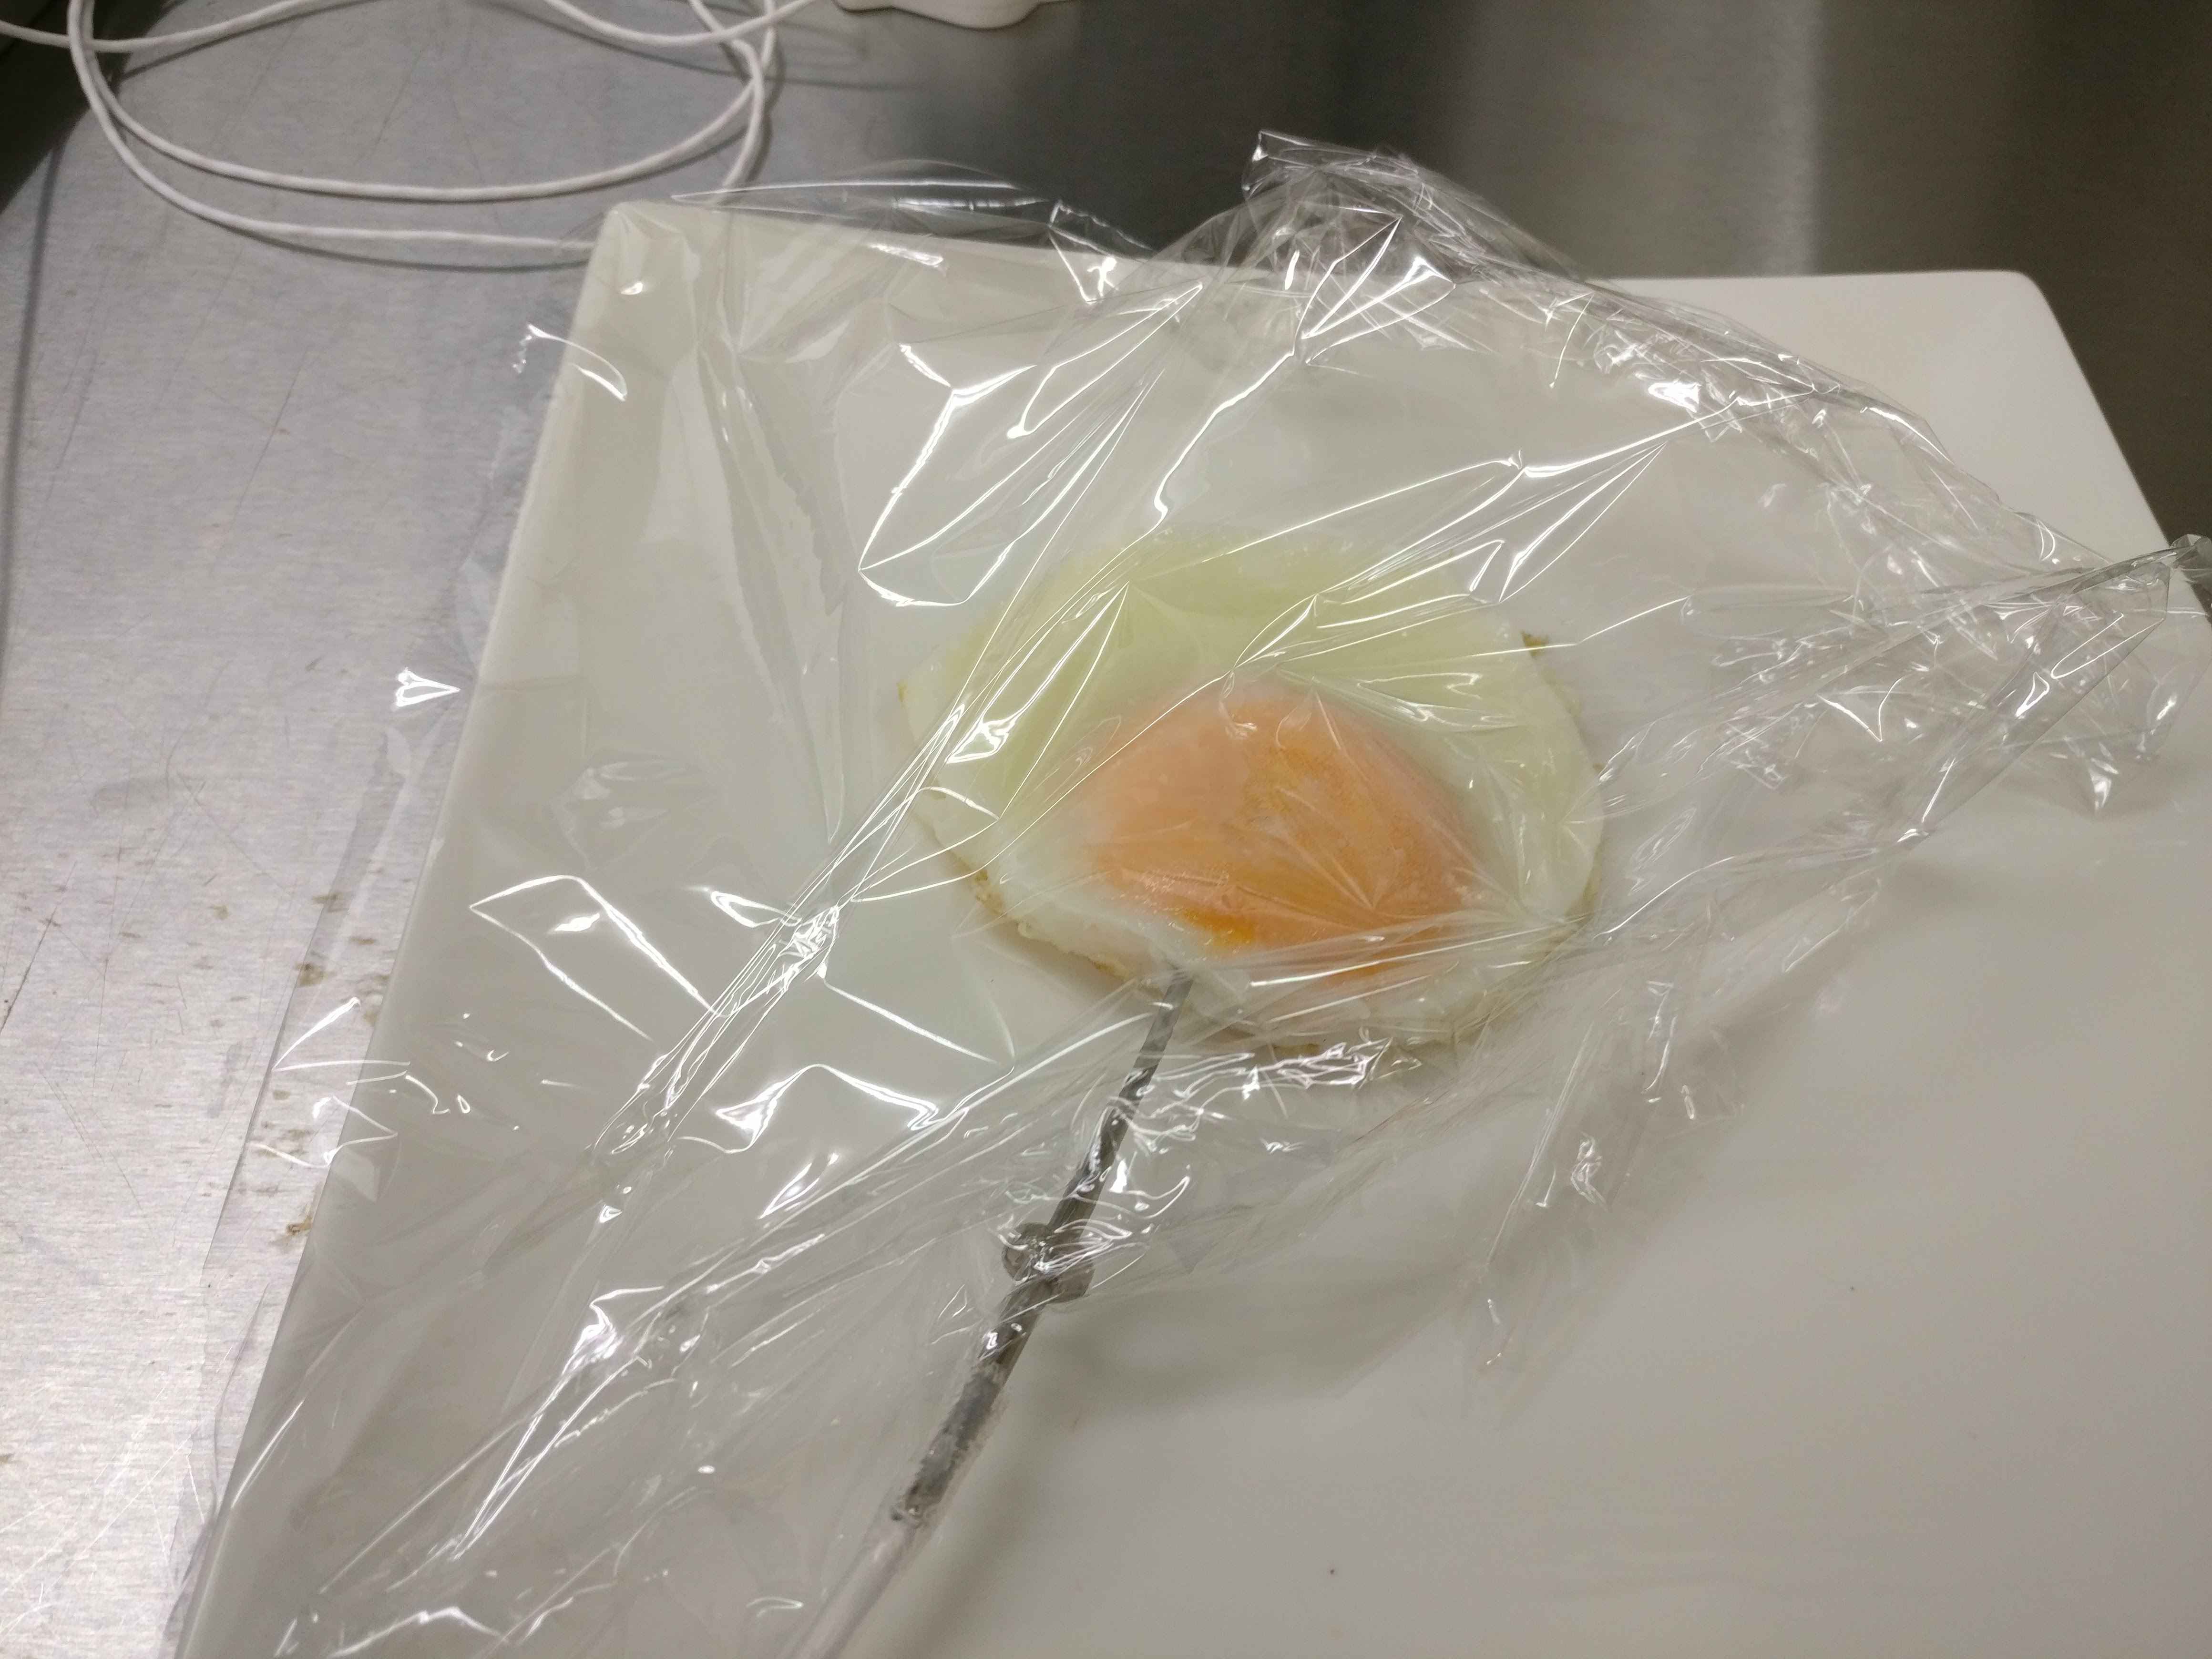 Defrosting flash frozen egg